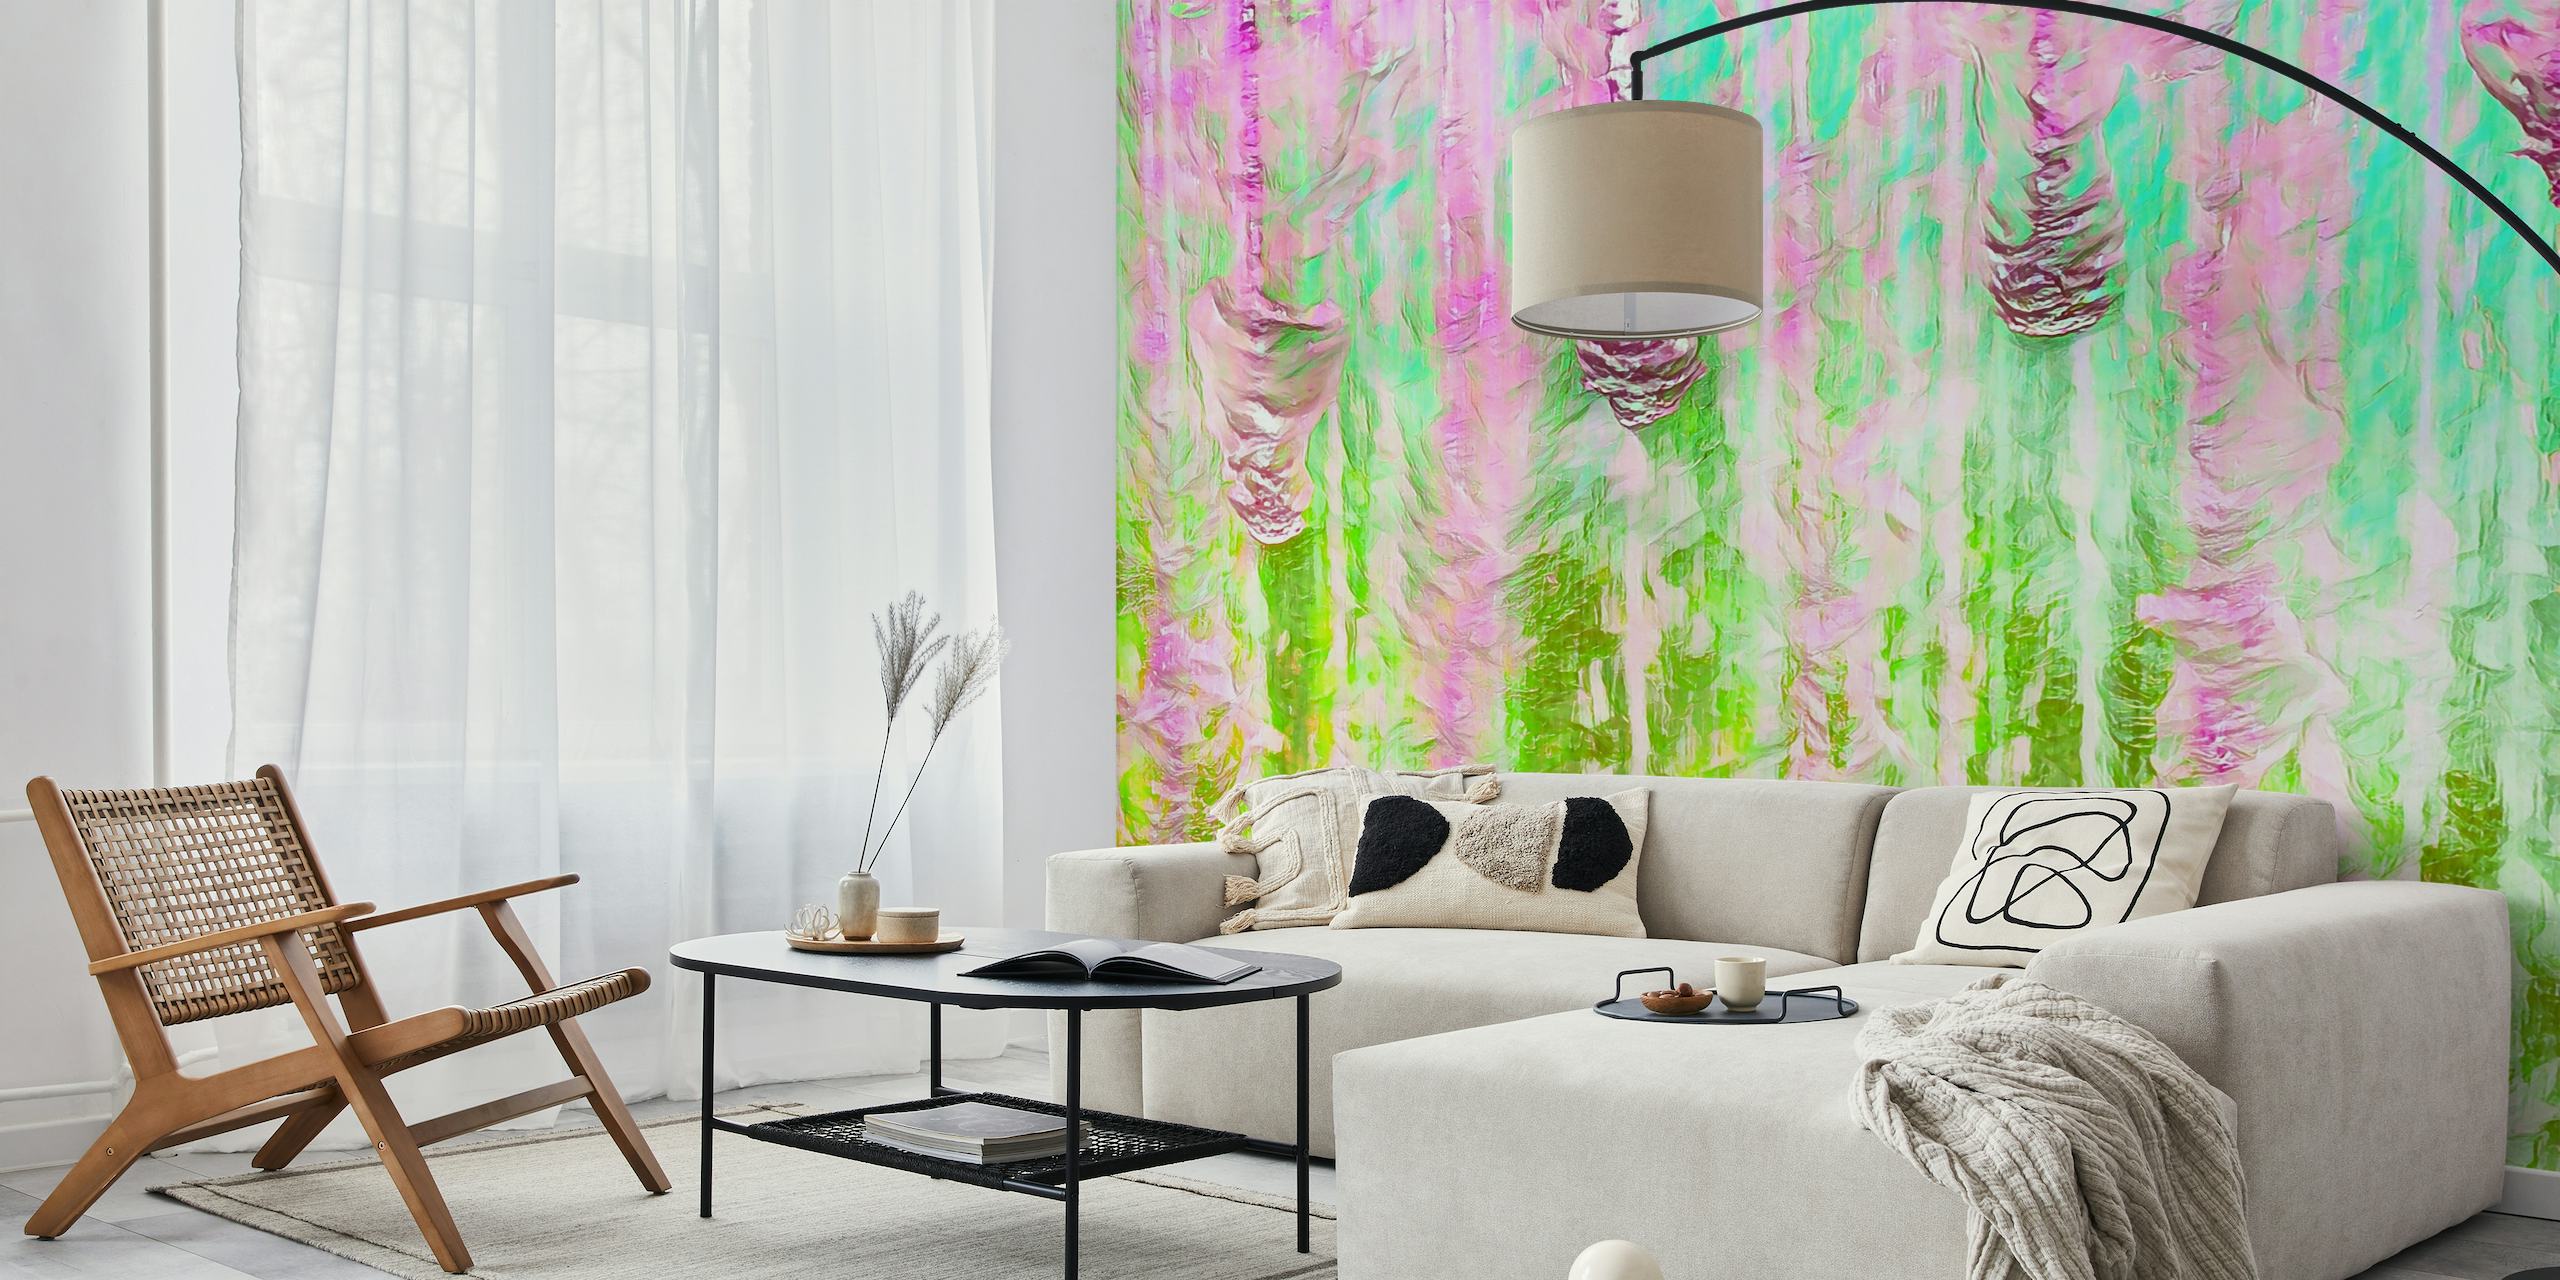 Farverigt abstrakt Happy Liquid Paint Flow-vægmaleri med levende pink og grønt, hvilket skaber en flydende akvareleffekt.